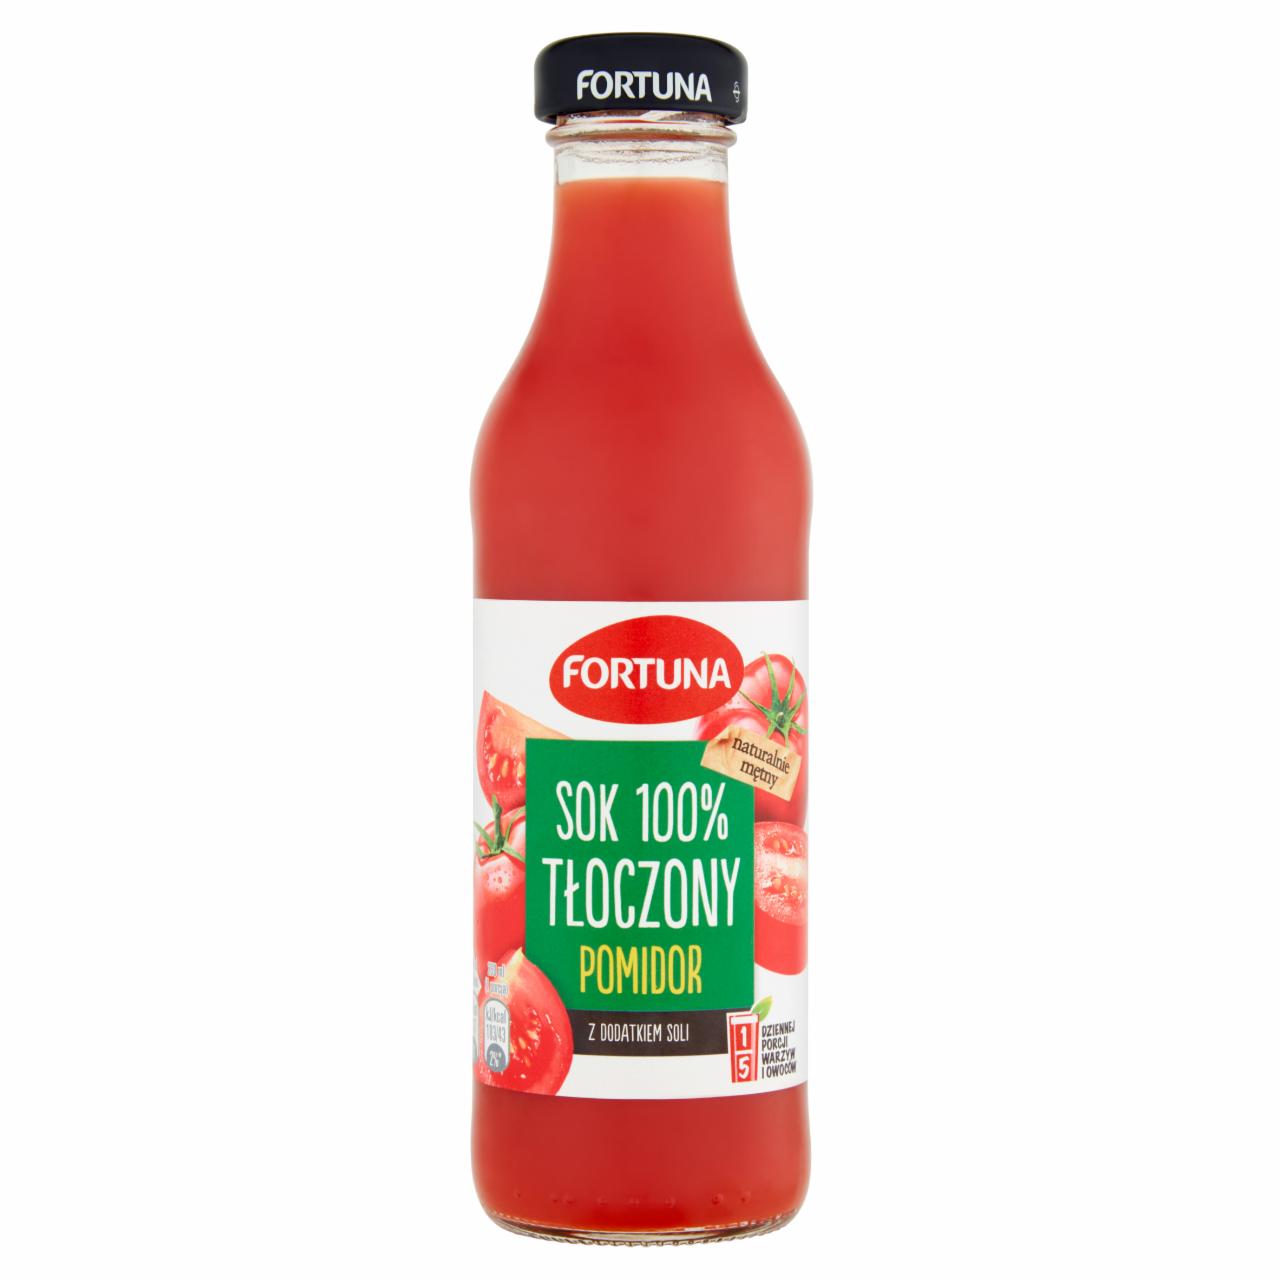 Zdjęcia - Fortuna Sok 100% tłoczony pomidor 250 ml